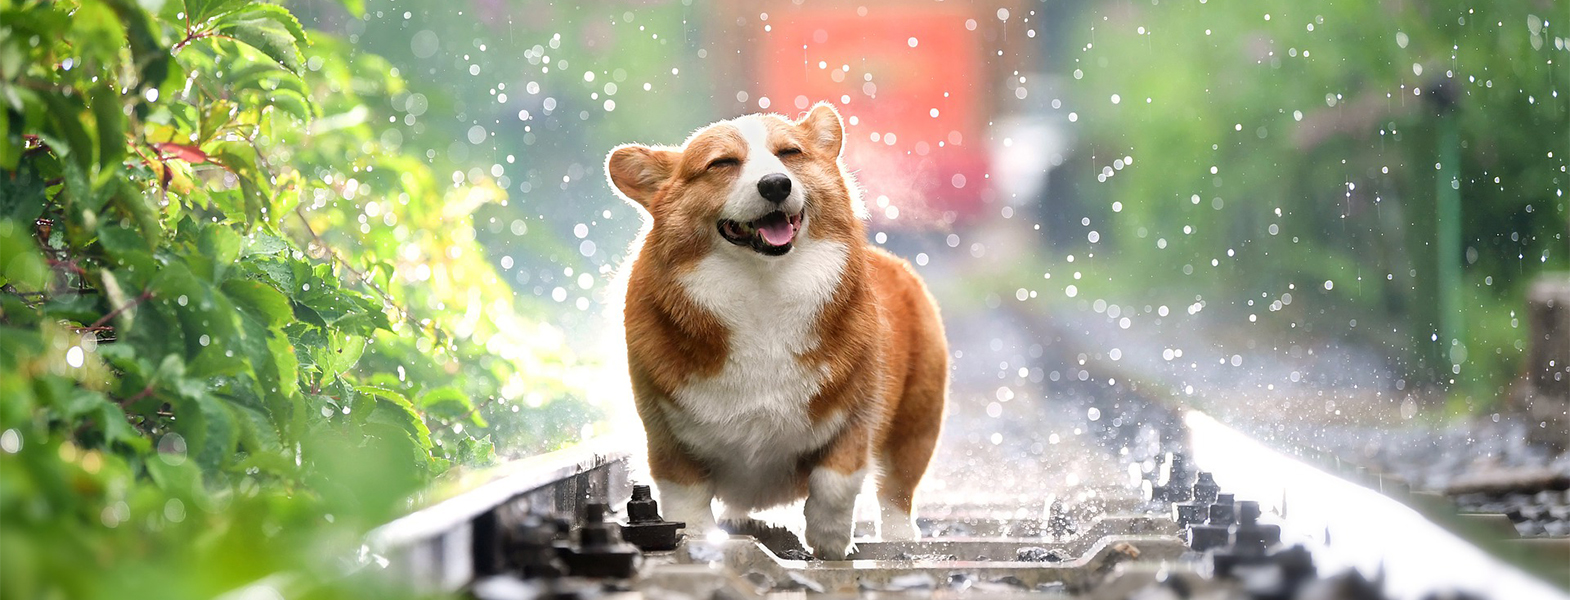 雨の日に外を歩く愛犬